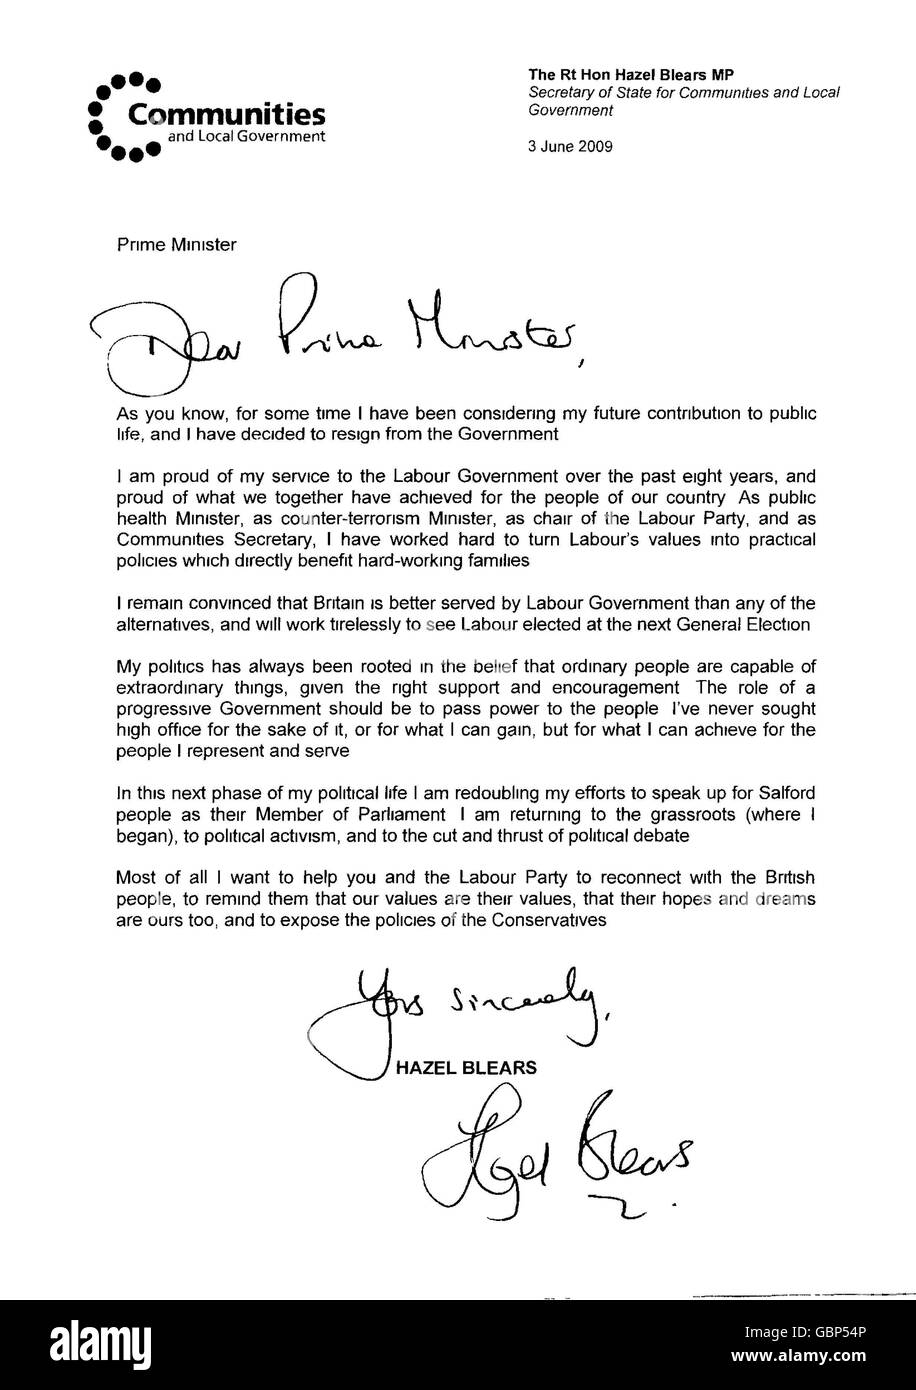 Eine Kopie des Schreibens, das von der Sekretärin der Gemeinschaften, Hazel Blears, an Premierminister Gordon Brown geschickt wurde und über ihre Entscheidung, aus dem Kabinett zurückzutreten, informierte. Stockfoto